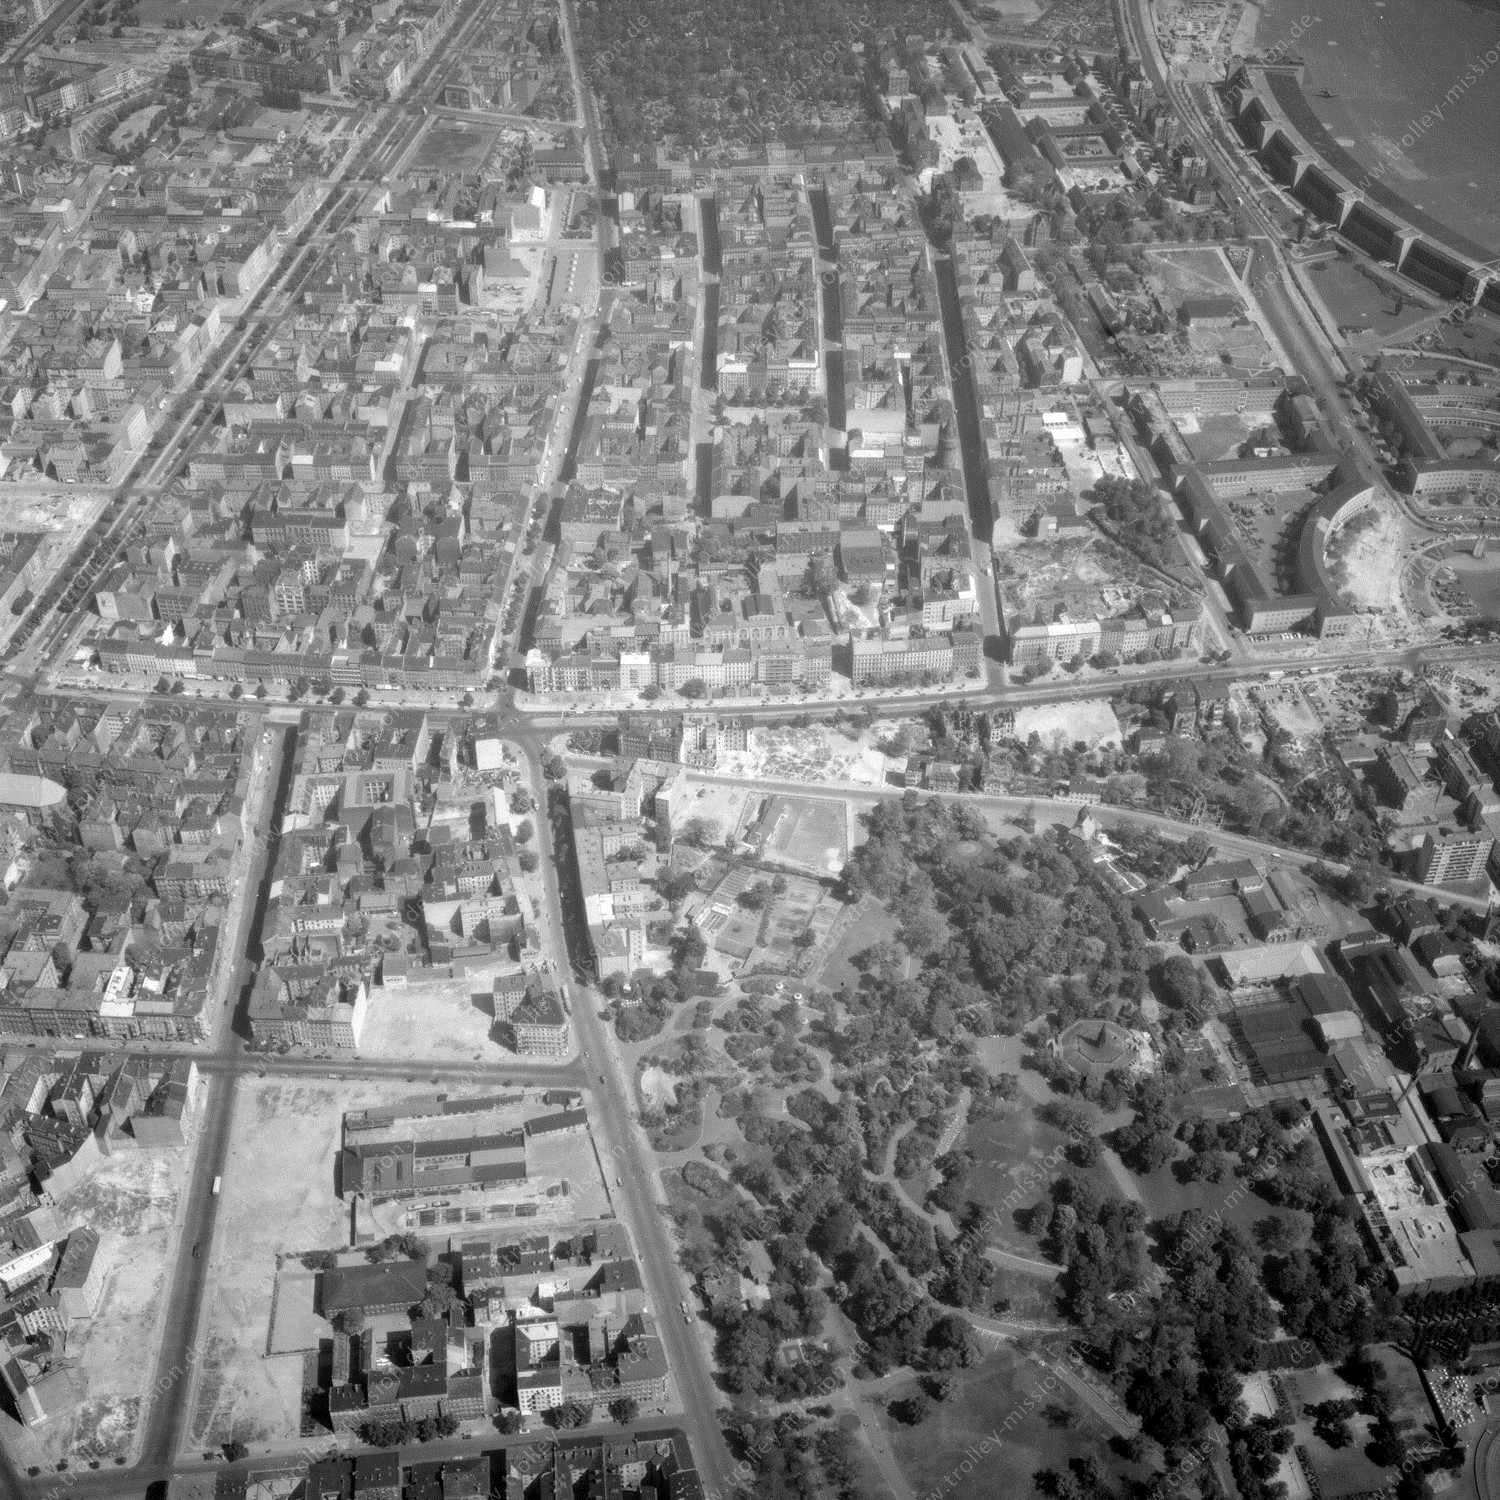 Alte Fotos und Luftbilder von Berlin - Luftbildaufnahme Nr. 02 - Historische Luftaufnahmen von West-Berlin aus dem Jahr 1954 - Flugstrecke India